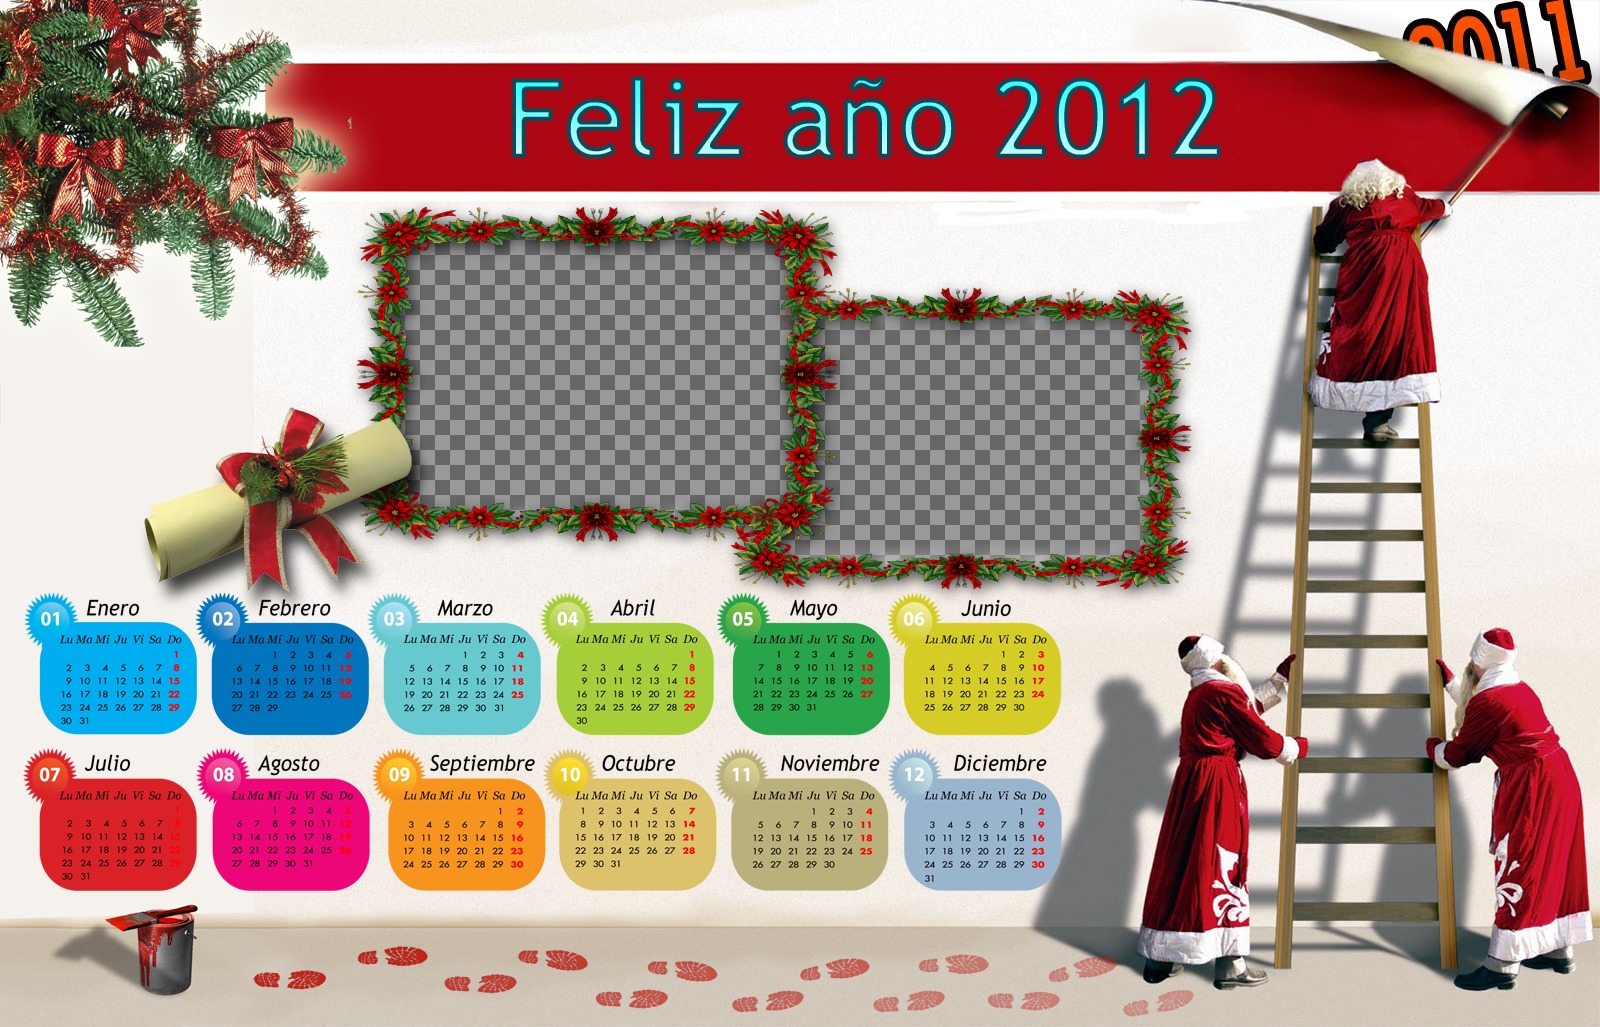 Kalender 2012 mit Monat coloresy Weihnachten und der Weihnachtsmann..